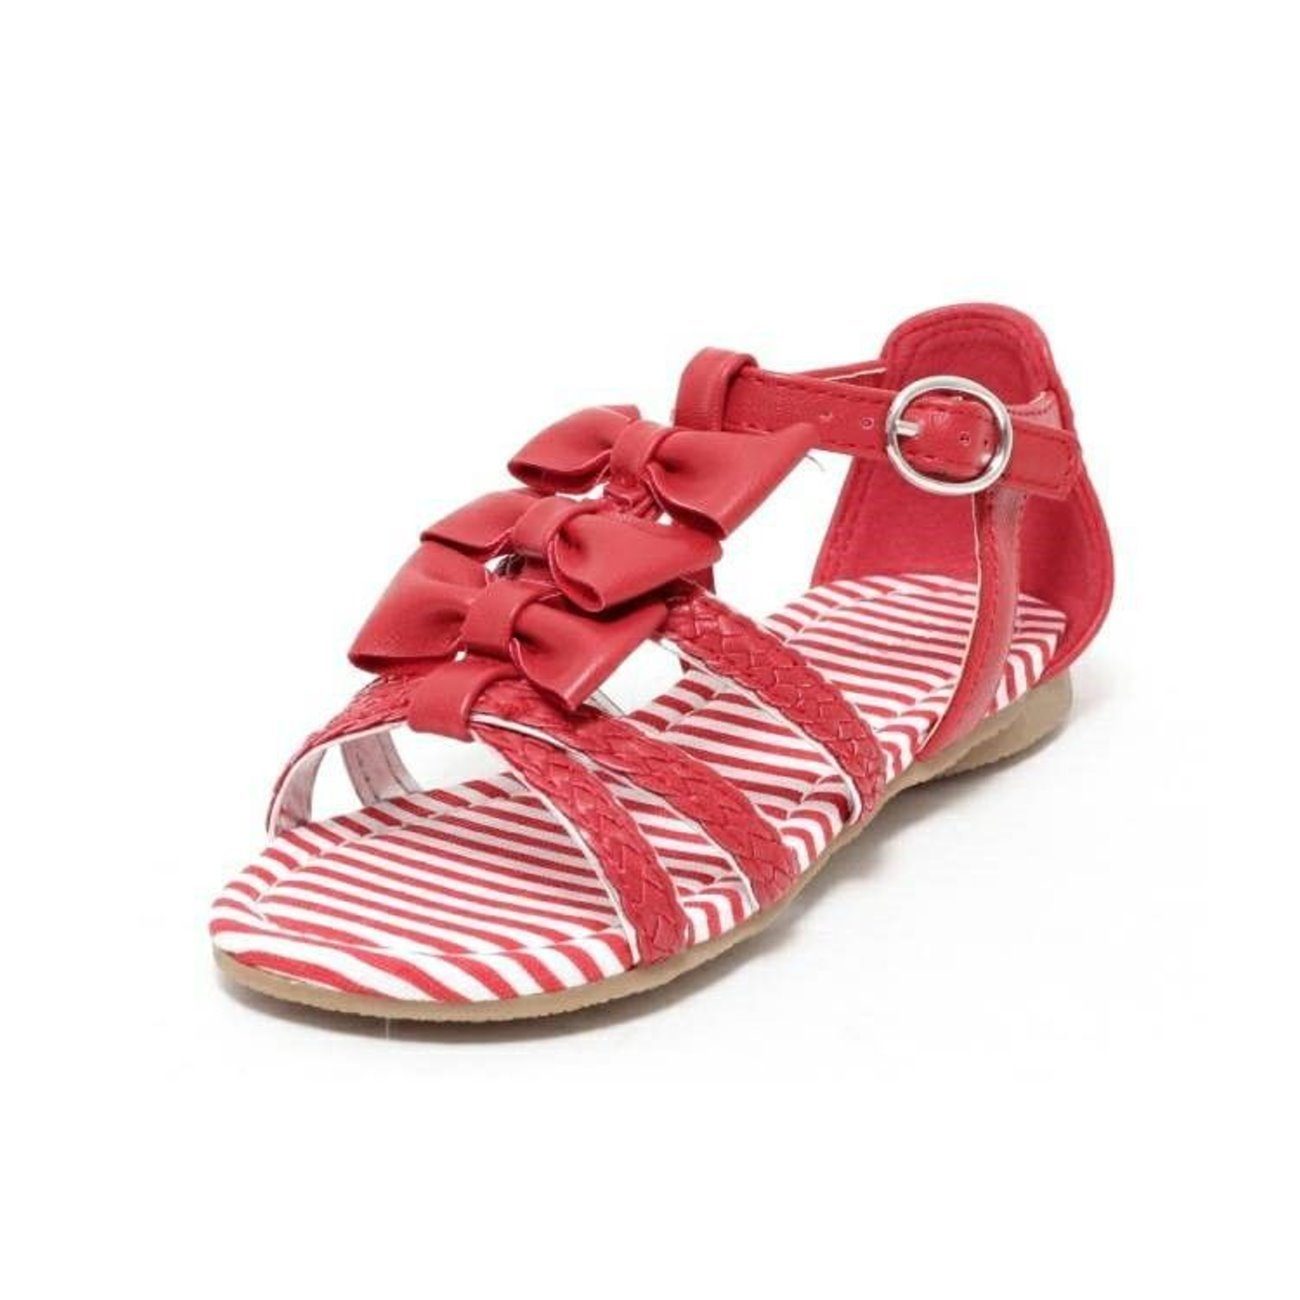 Sandale maritim Schuhe dynamic24 rot Kinder Sommer Sandalette Riemchensandalen Mädchen